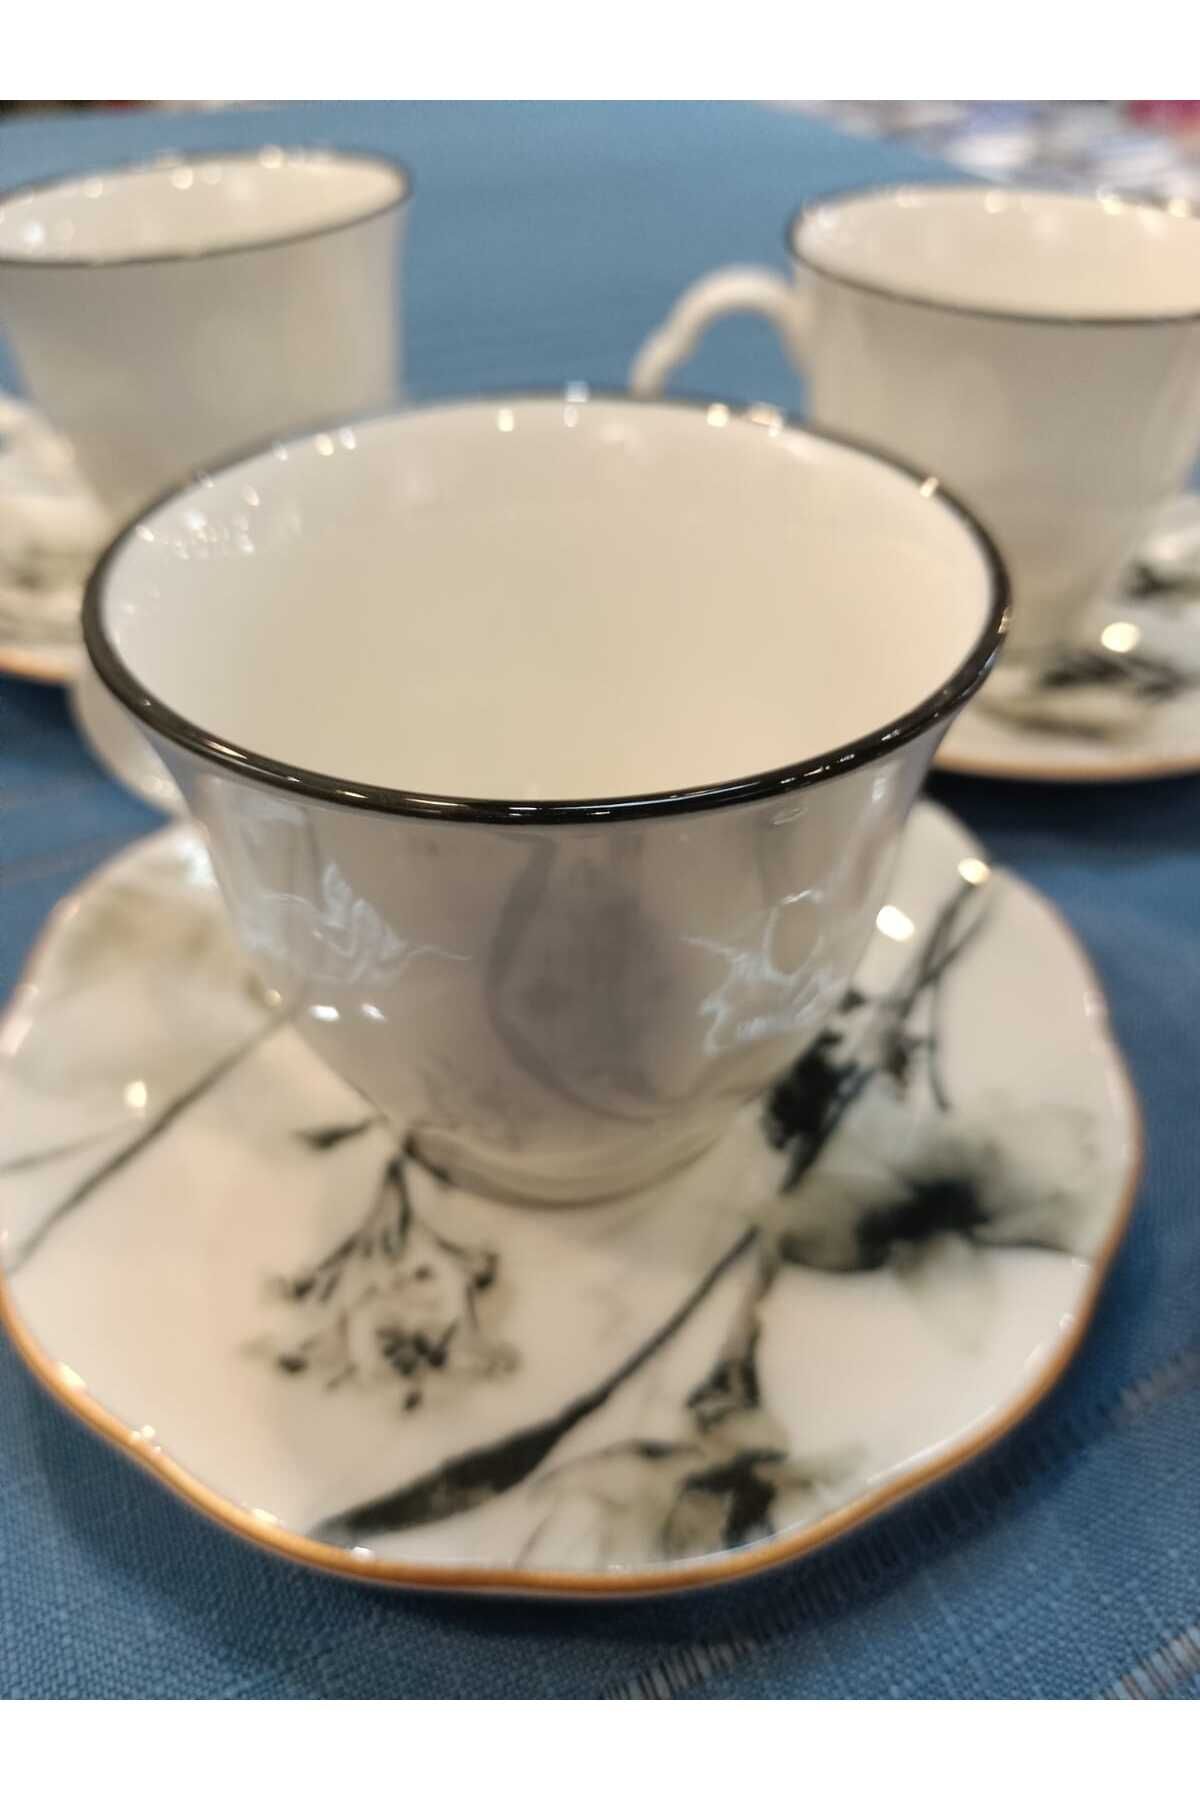 Tulü Porselen Tulu porselen 6 kişilik porselen çay fincan takımı